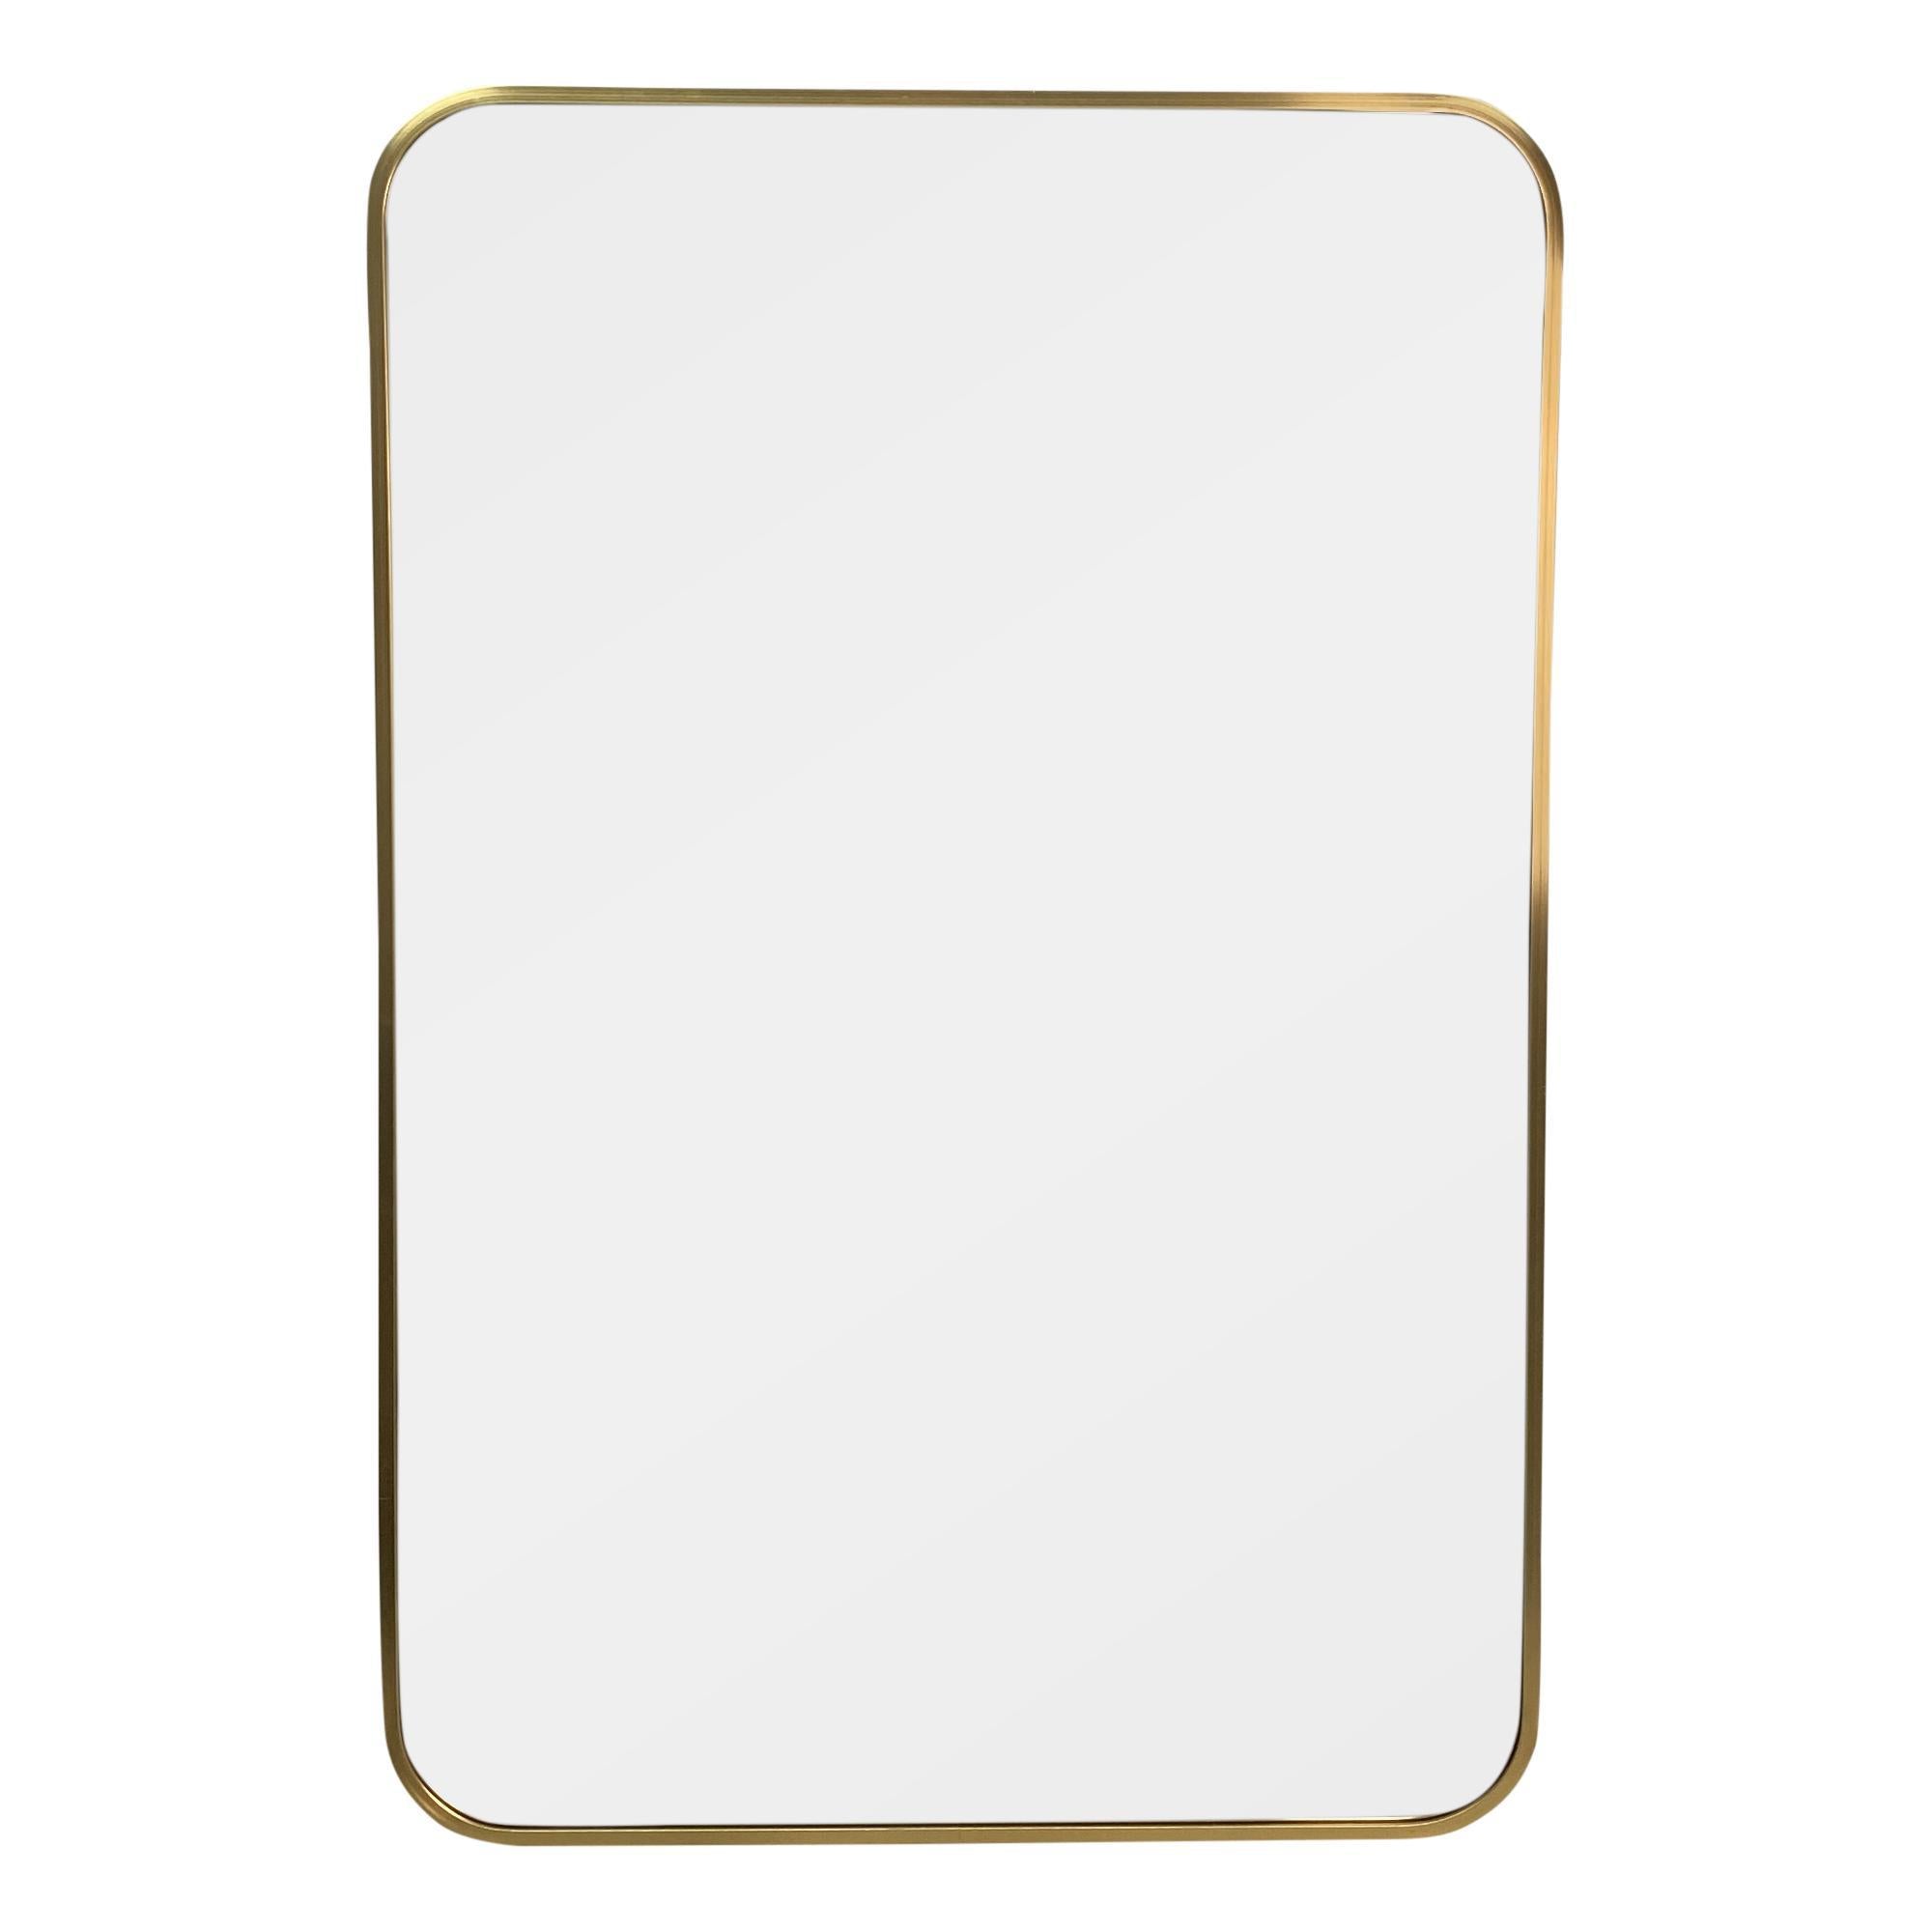 Espejo rectangular dorado